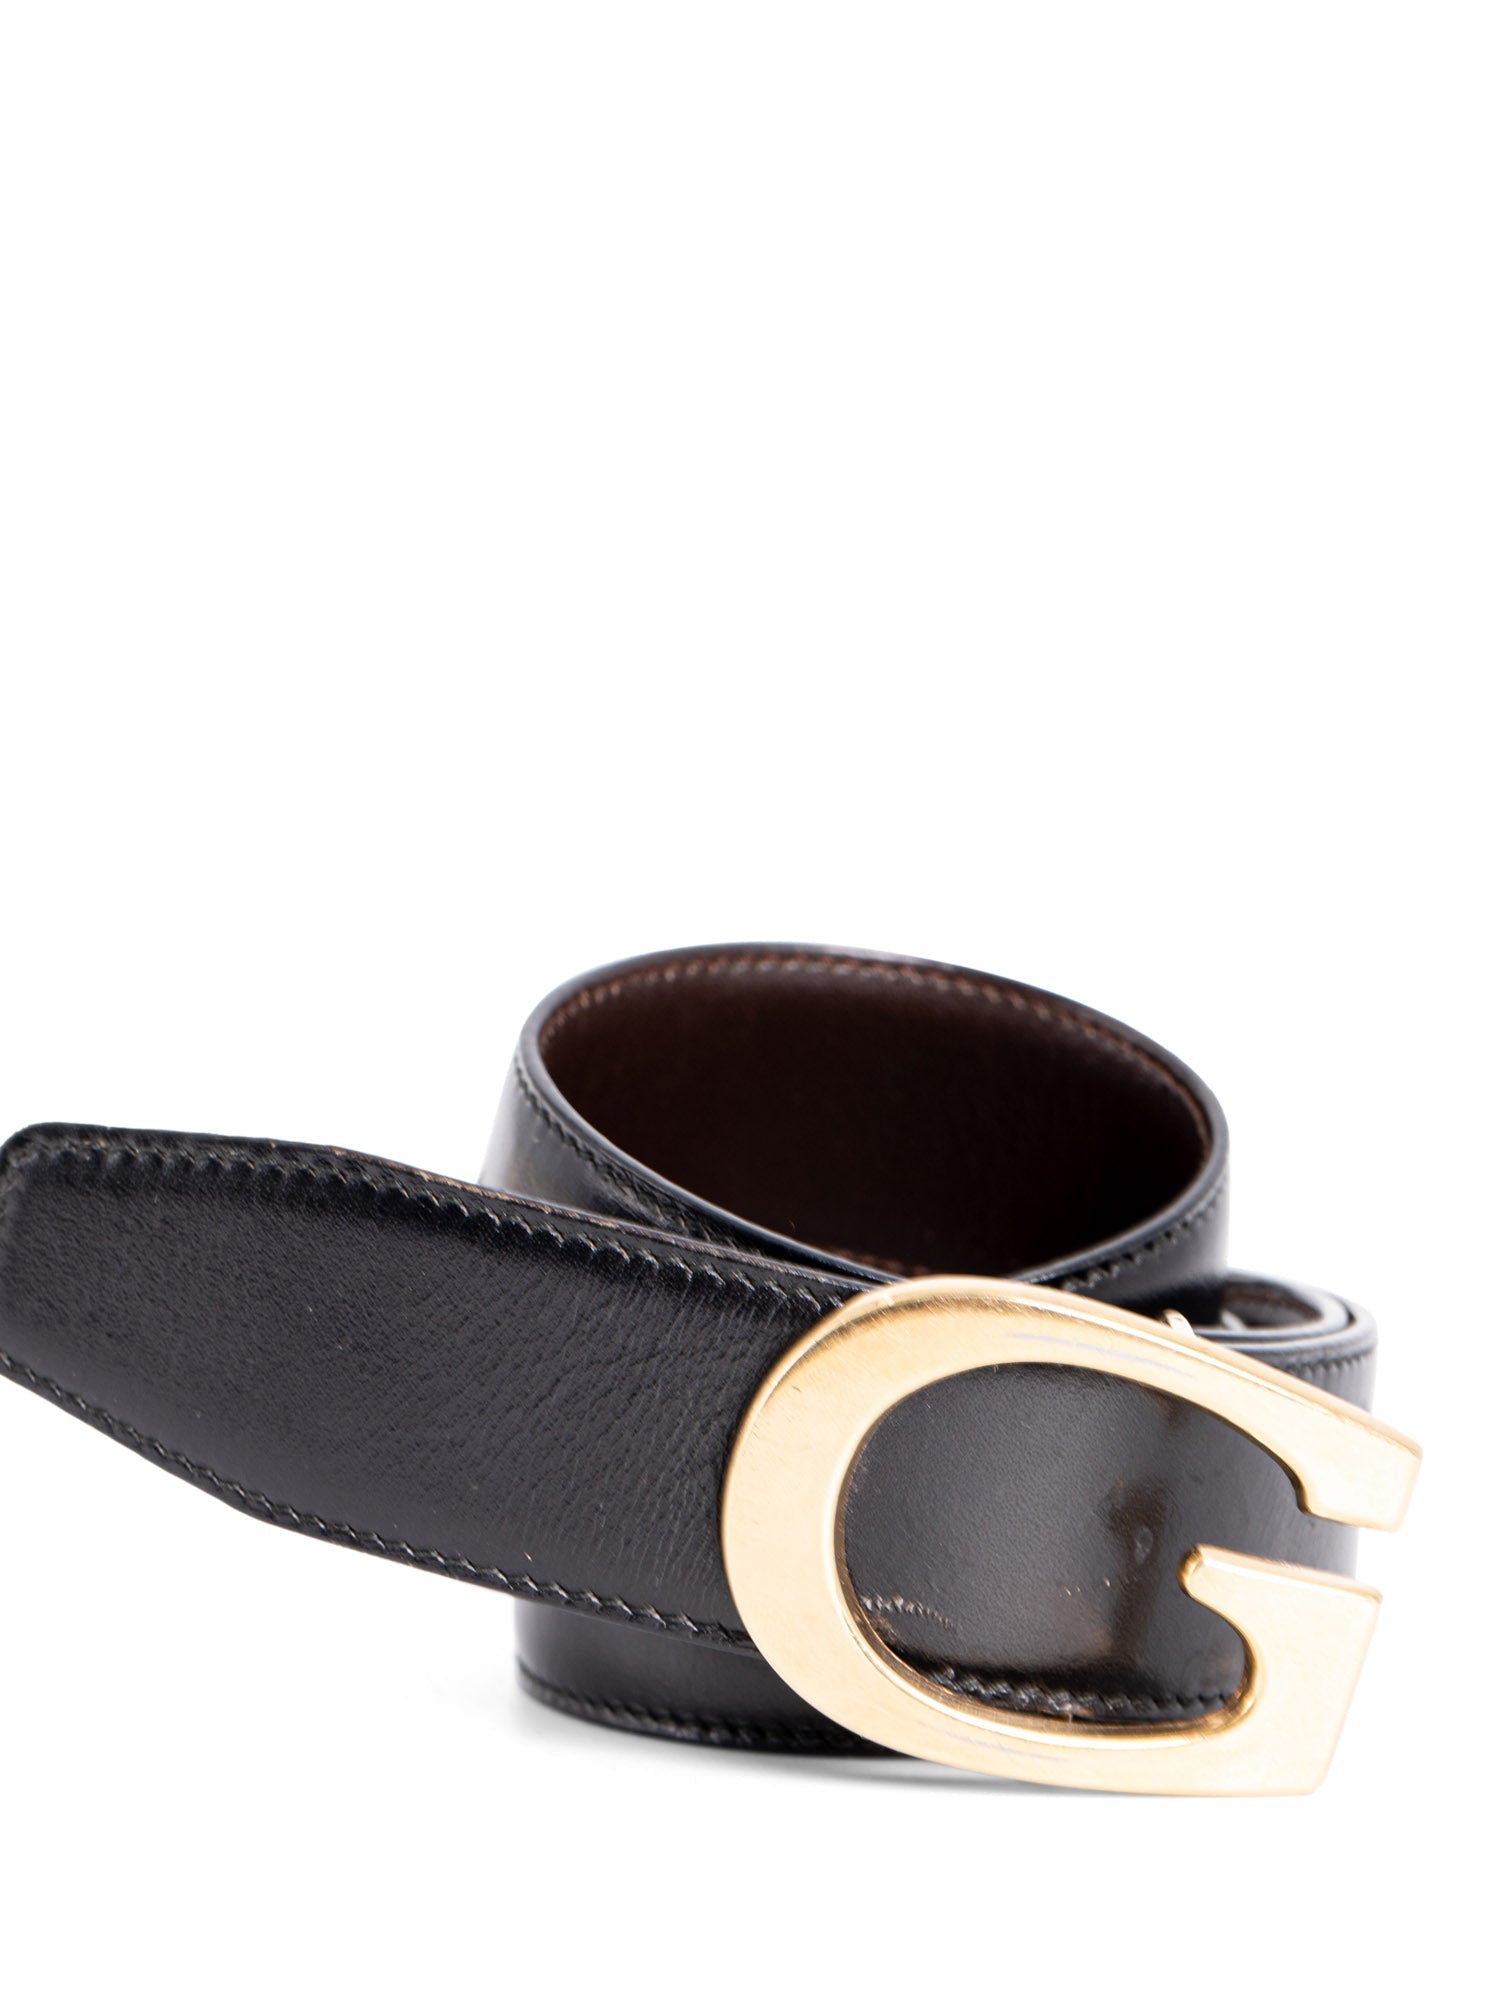 Gucci Leather G Logo Belt Black-designer resale